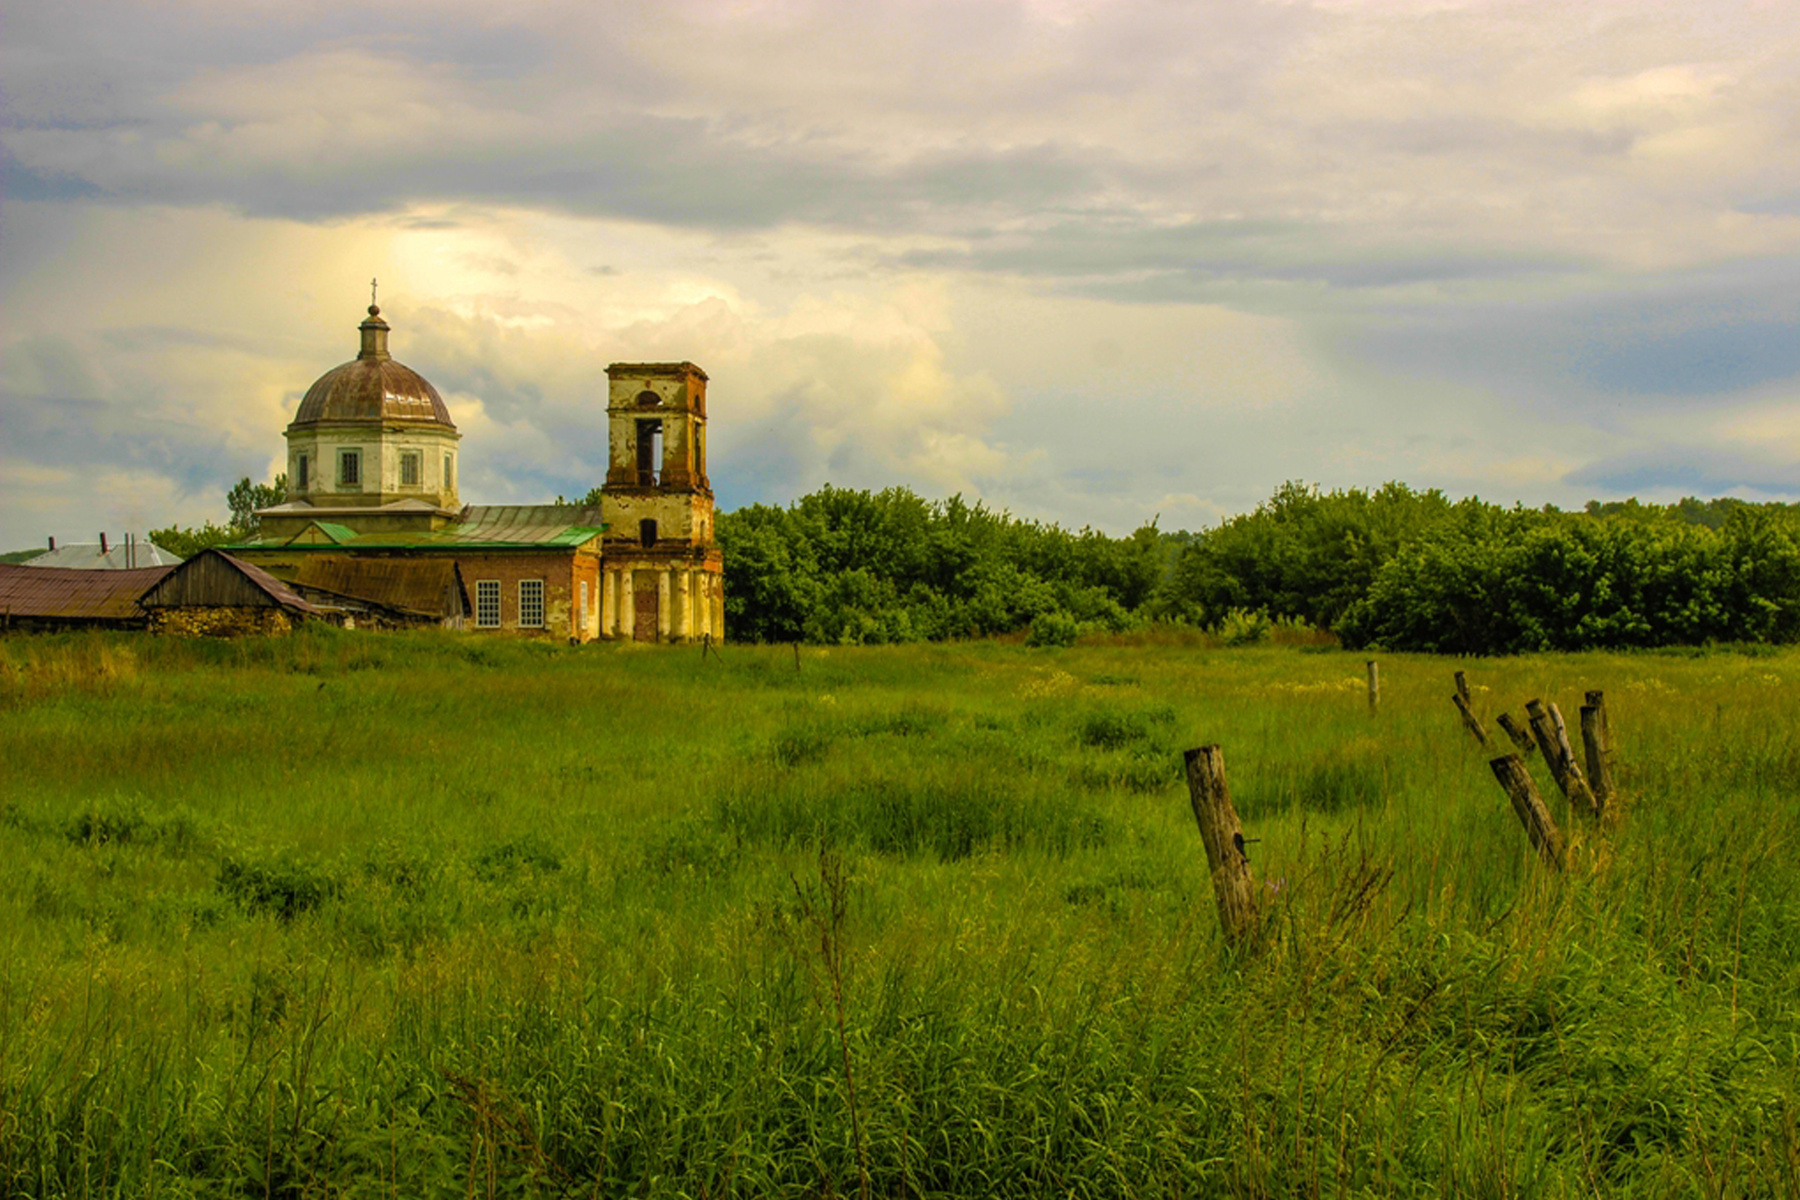 Перед дождём лето Саратовская область природа пейзаж июнь пастораль храм церковь